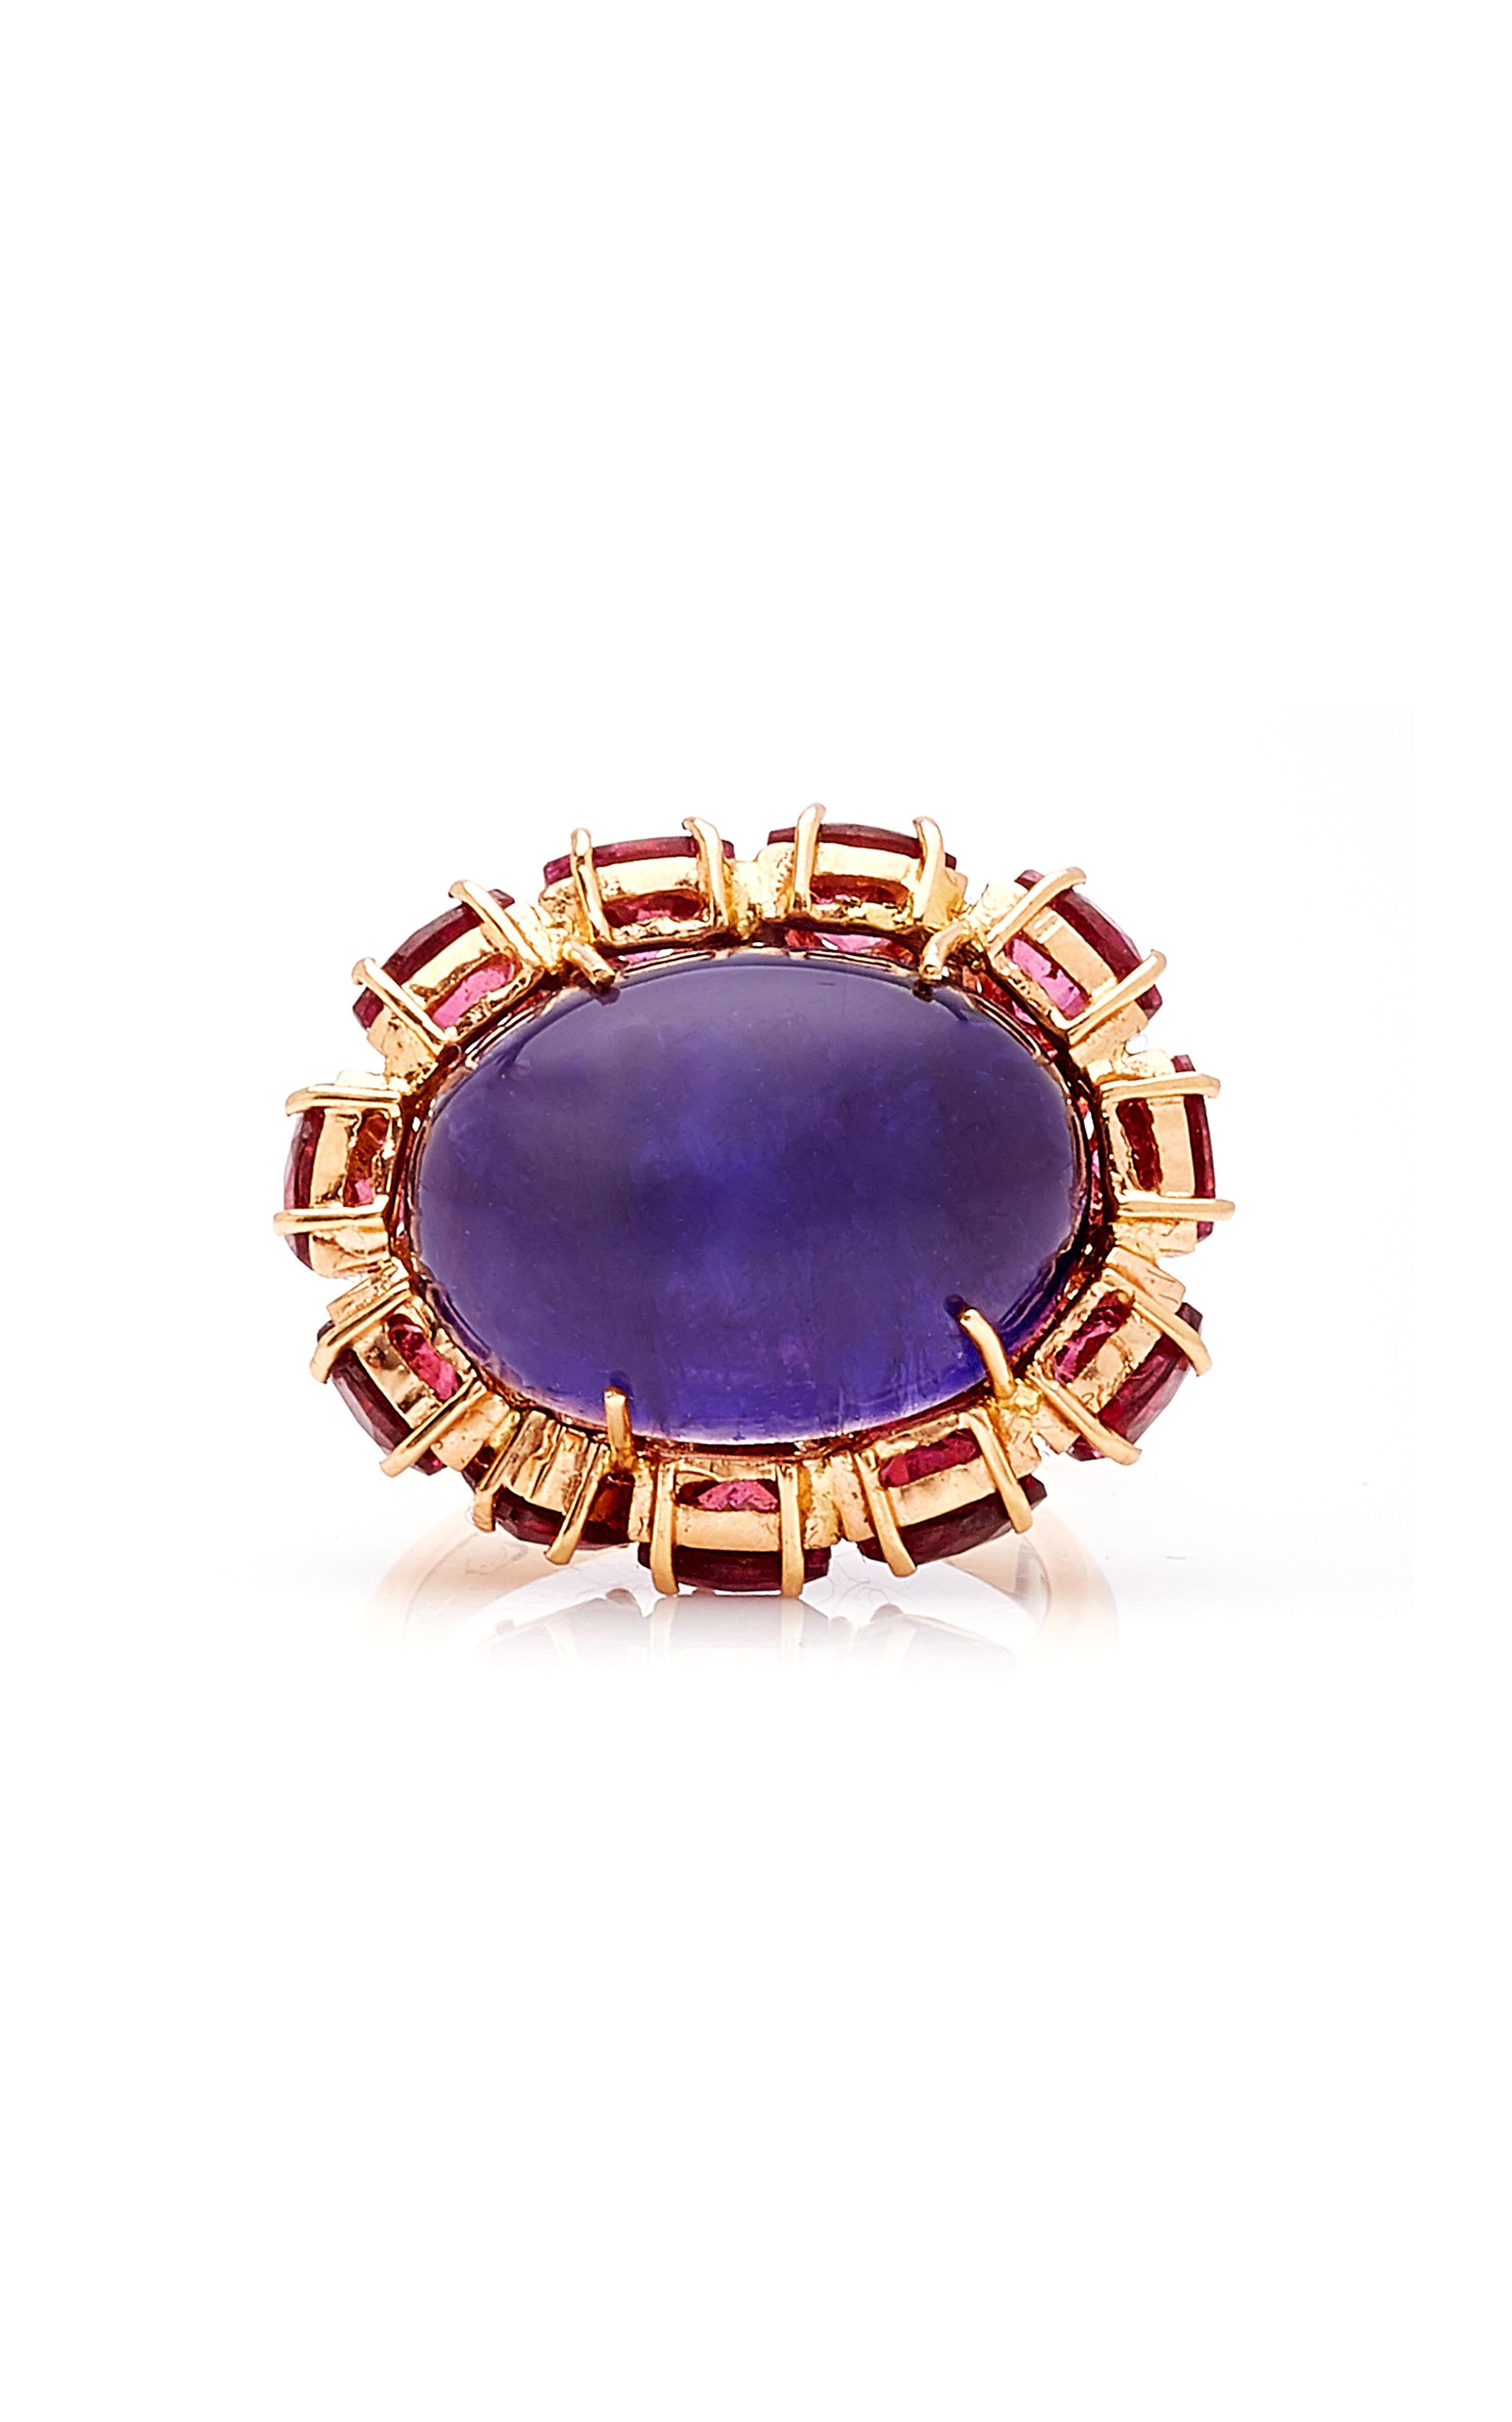 Violett-blaue und fuchsiafarbene Farbtöne .... Dieser bezaubernde Ring zeigt einen großen indigoblauen Iolith-Cabochon, der aus einem Bett aus glitzerndem magentafarbenem Rhodolith im Billionenschliff hervorragt.

18k Rose Gold, Iolith und